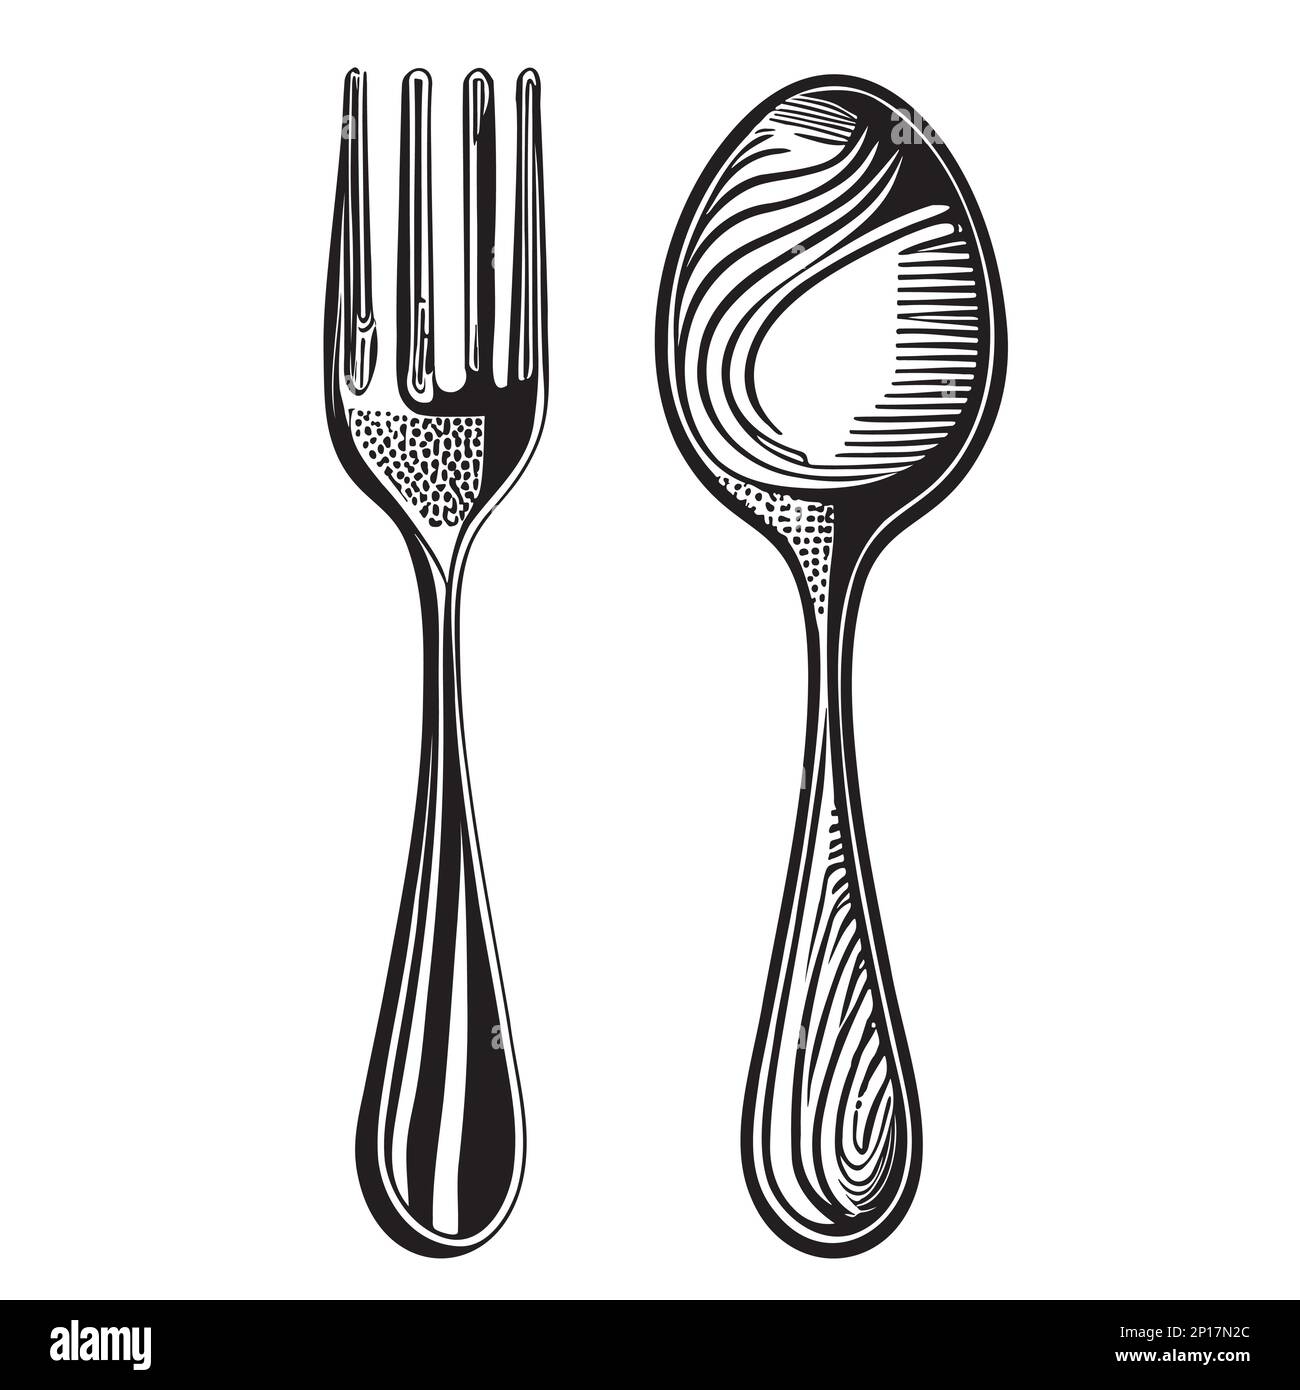 Dessin d'une cuillère et d'une fourchette dessiné avec une main dans l'illustration vectorielle de style Dudl Illustration de Vecteur